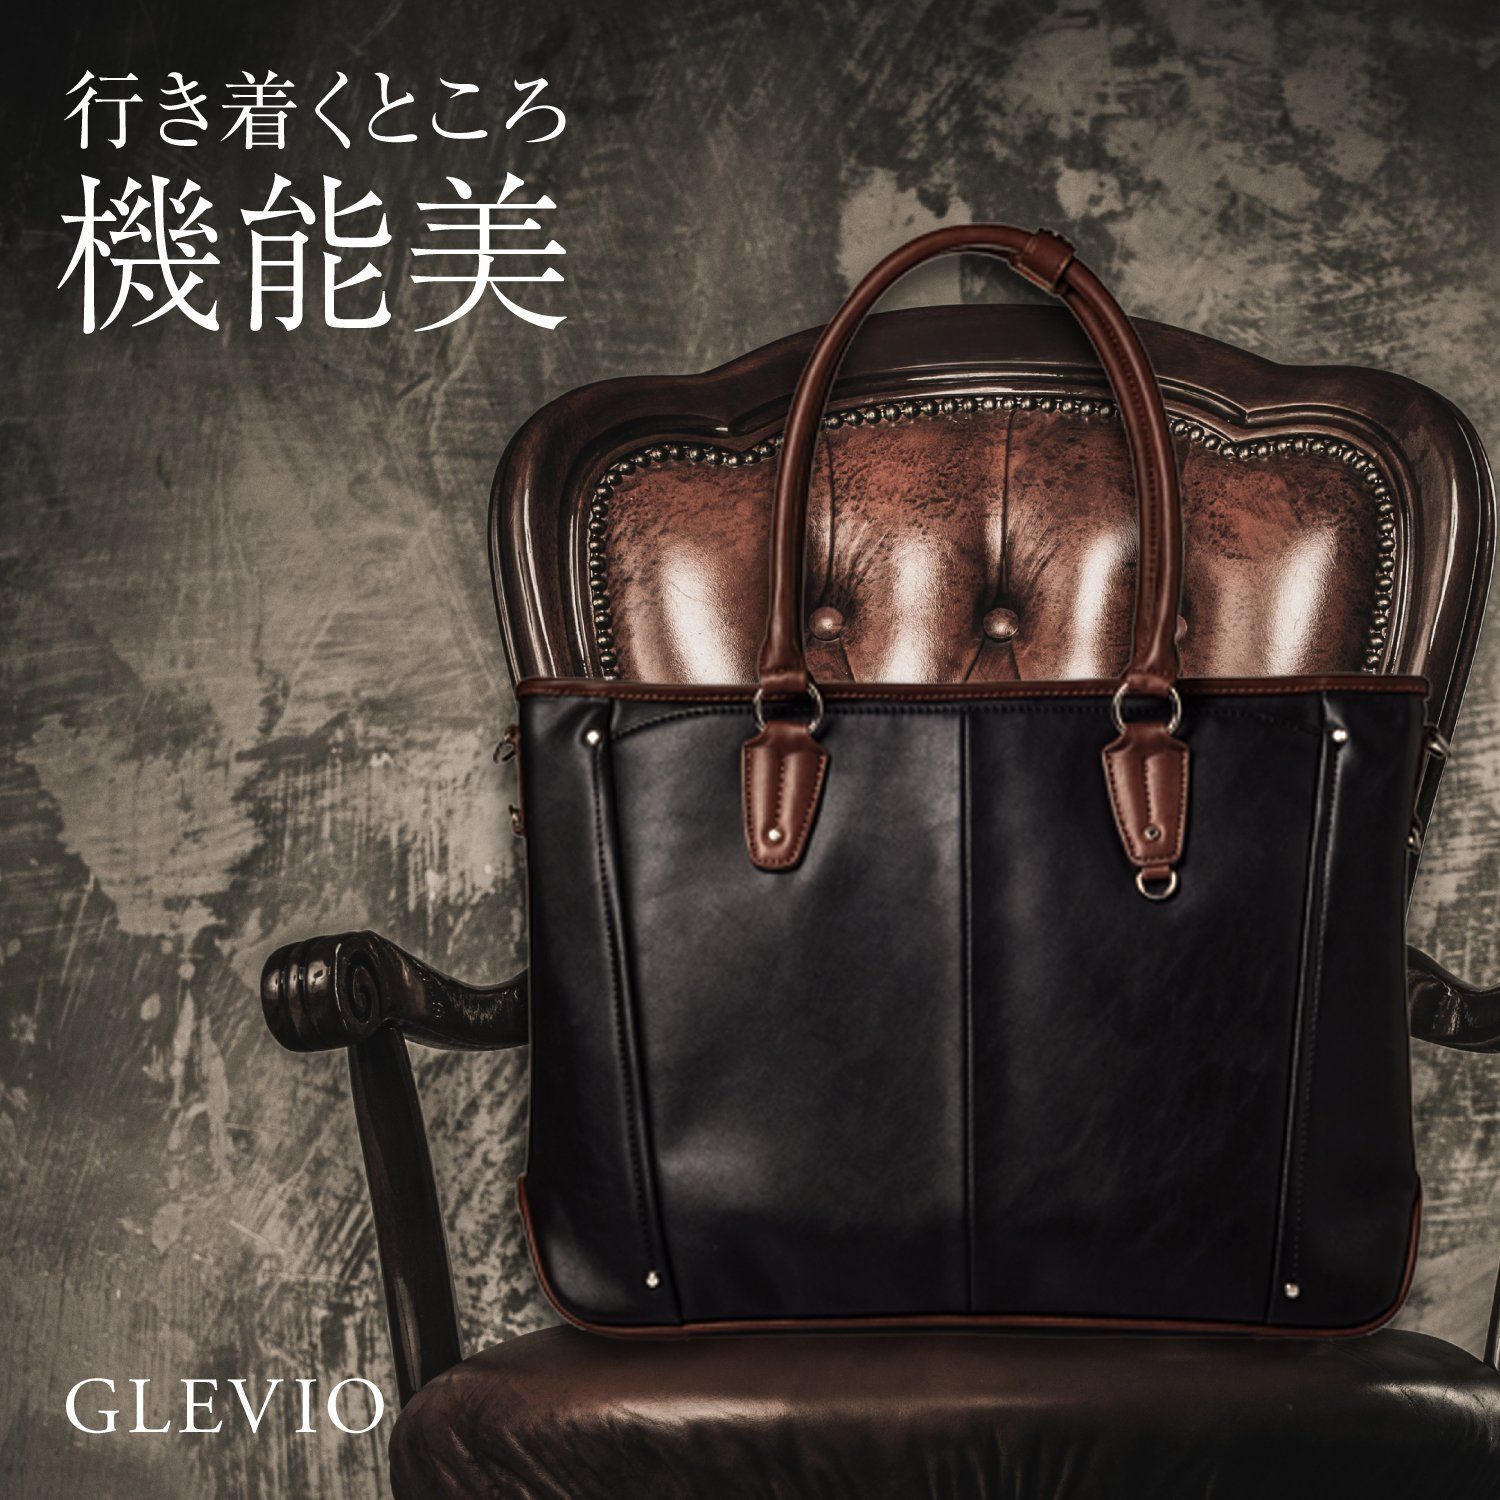 【色: ネイビー】[グレヴィオ] 一流の鞄職人が作る ビジネストートバッグ トー